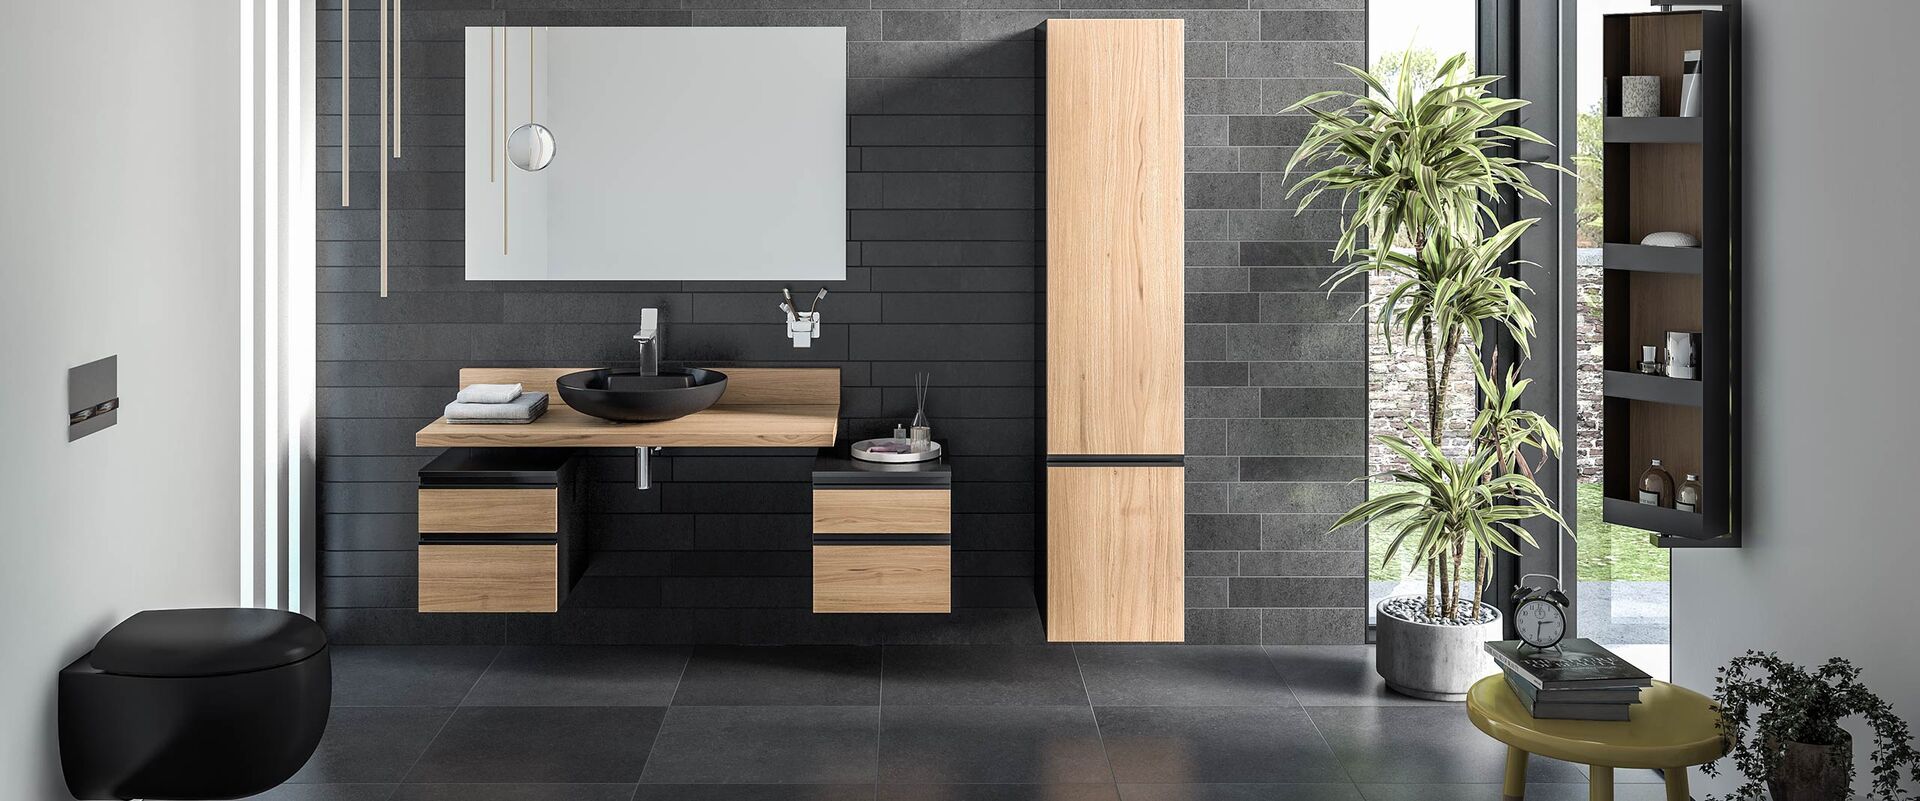 Toilette wandmontiert in Schwarz. Waschplatz mit Badspiegel und Badmöbeln aus Holz.